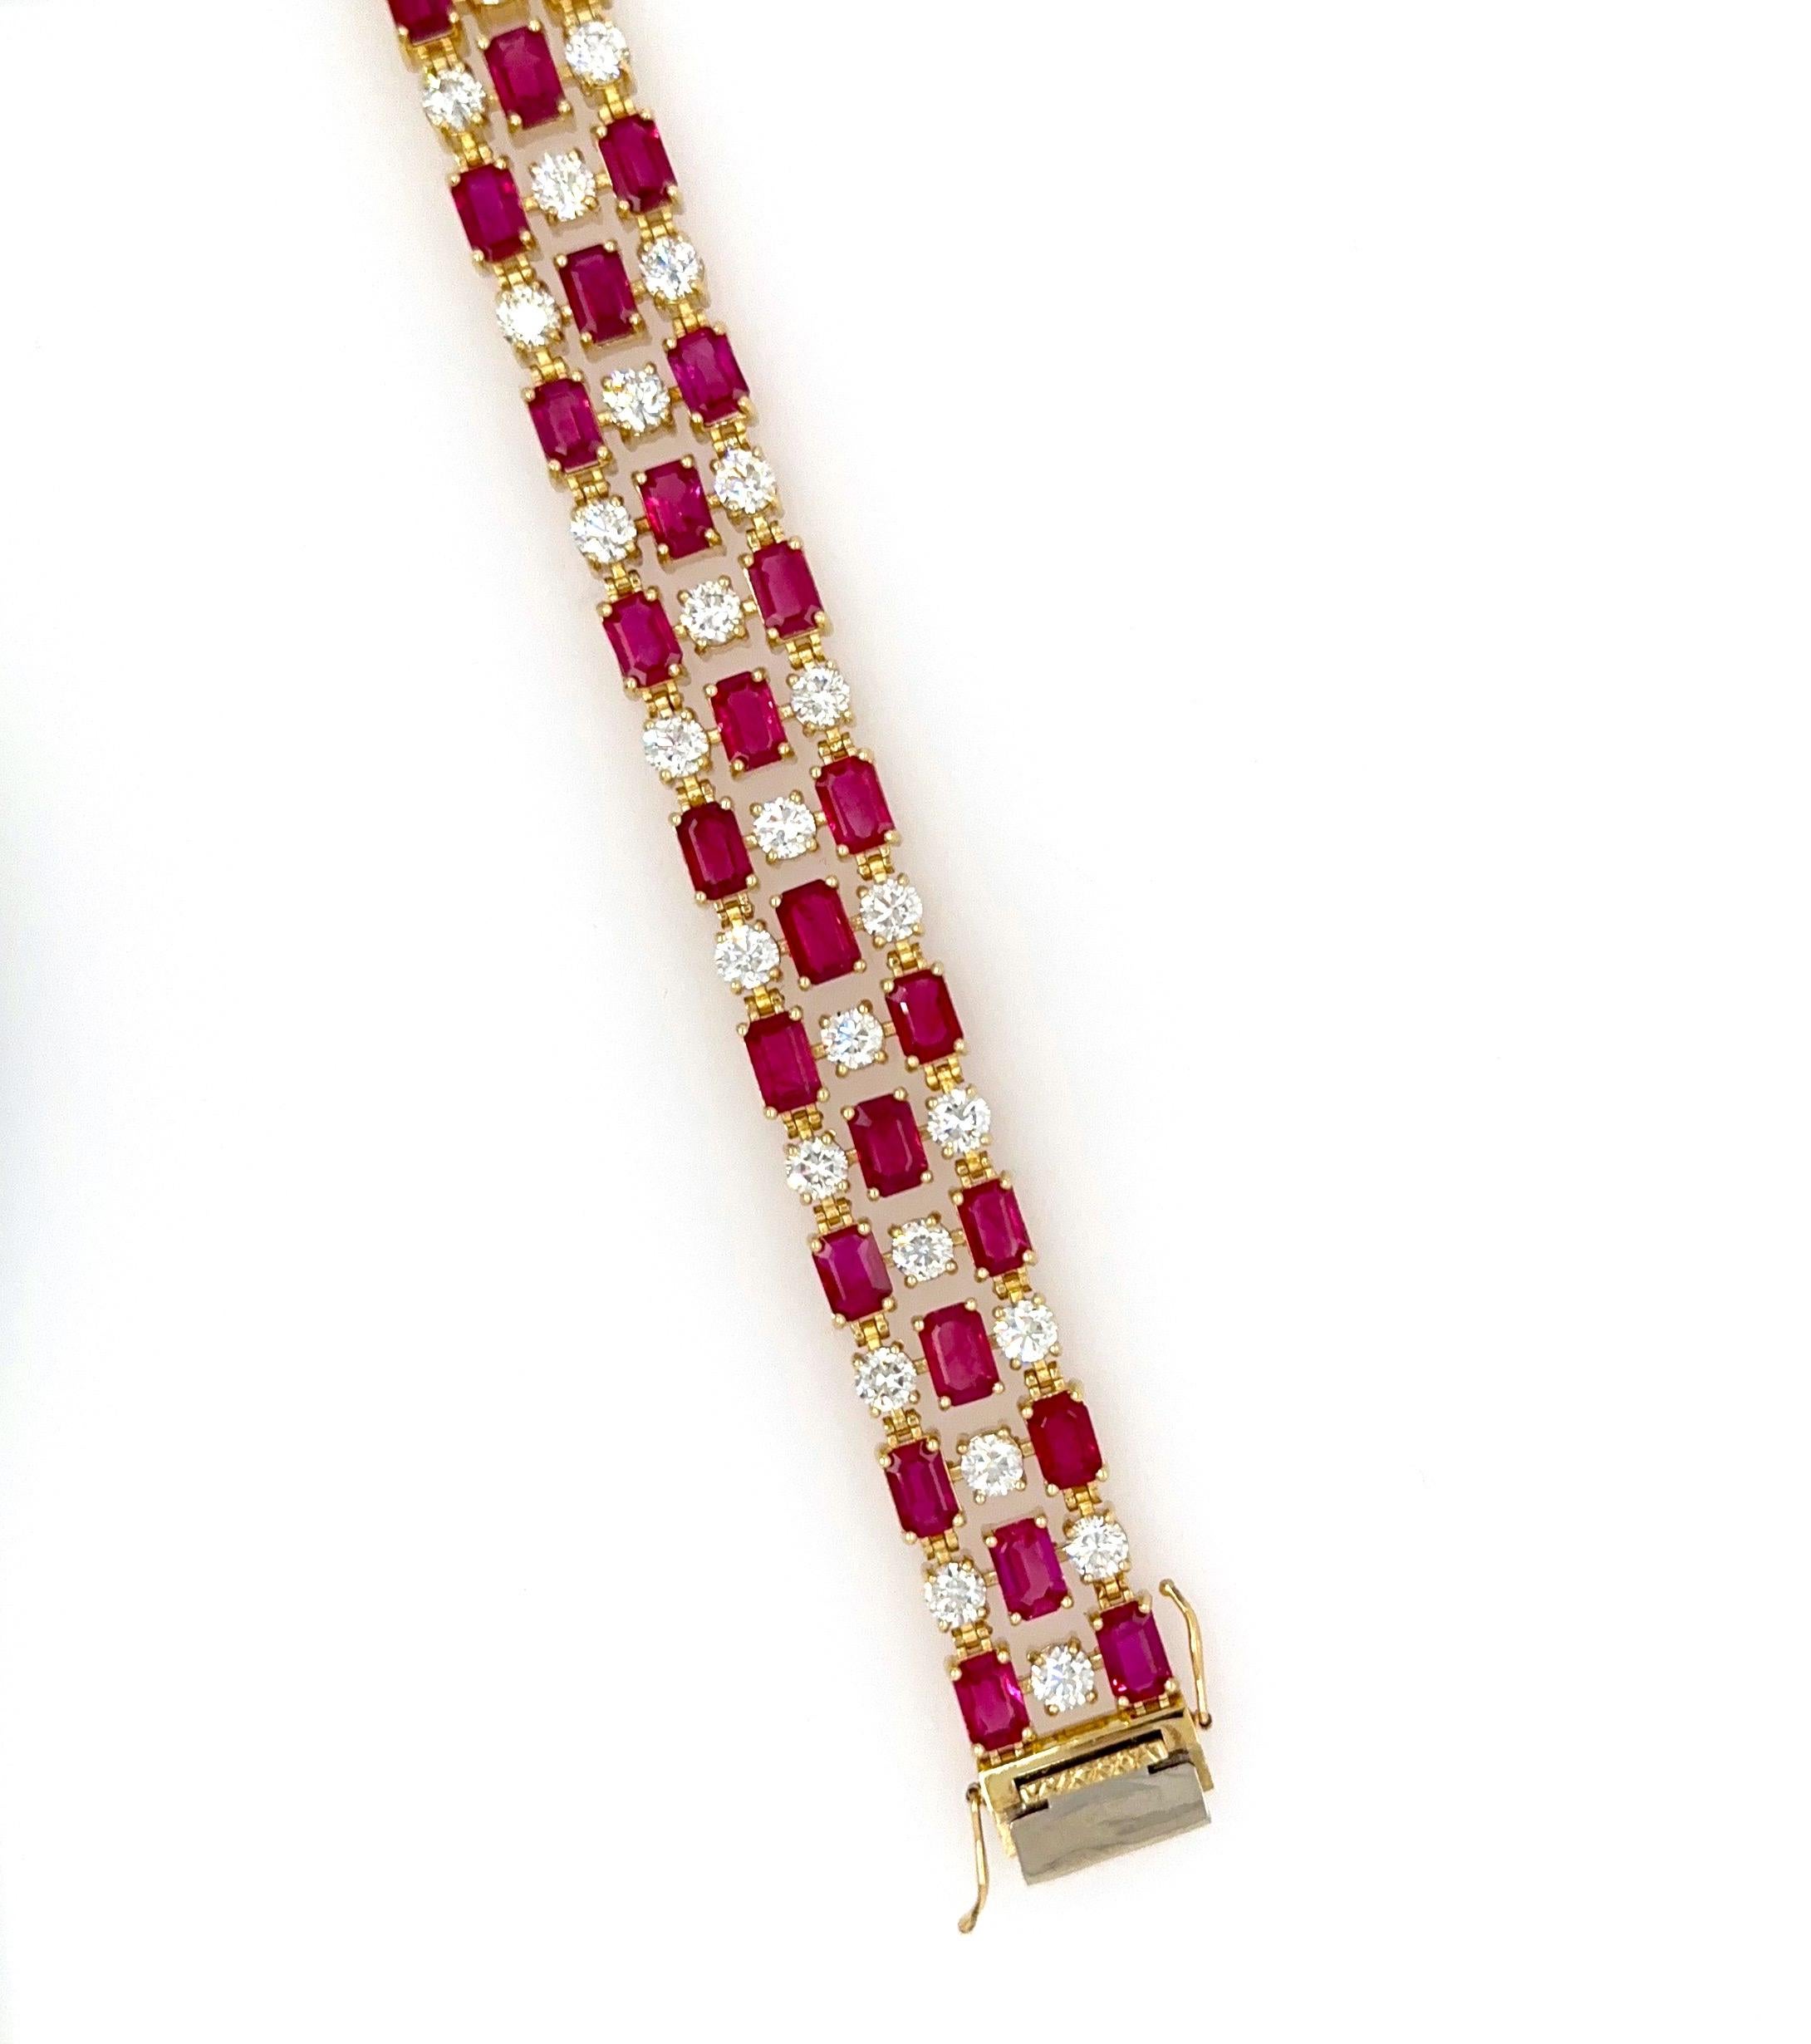 Bracelet unique en or jaune 18k avec 19,68ctw de rubis de Birmanie taille émeraude et 8,04ctw de diamants blancs naturels.
Ce beau bracelet est un 3 rangées tout neuf 7